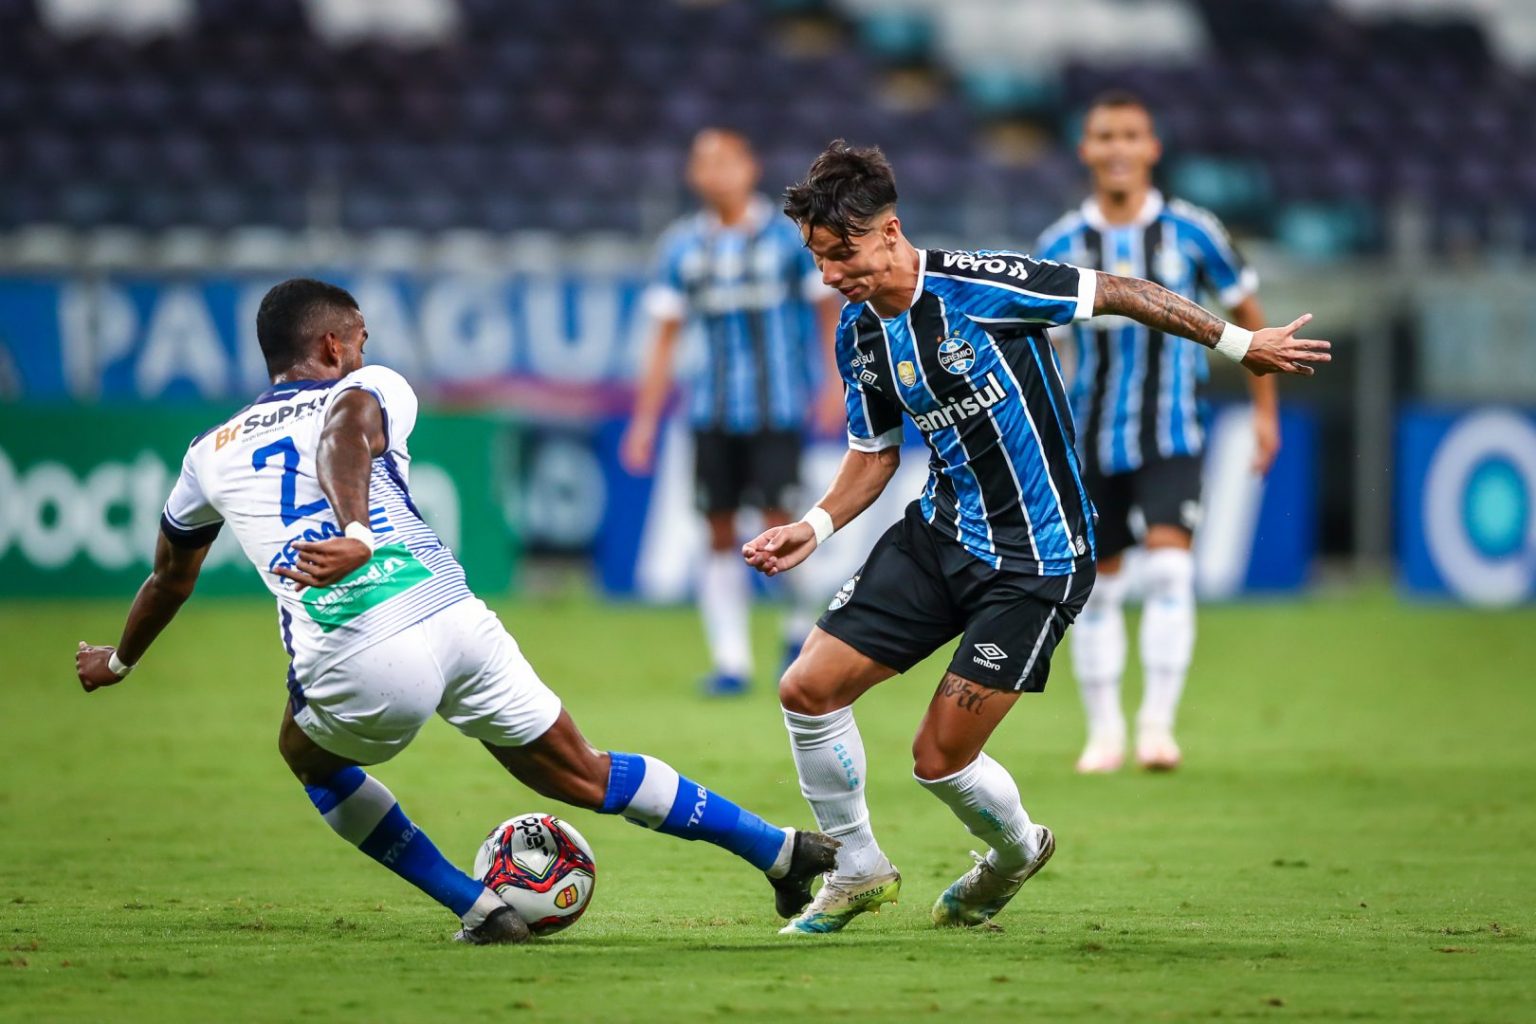 Grêmio vs ABC: A Clash of Titans on the Football Field